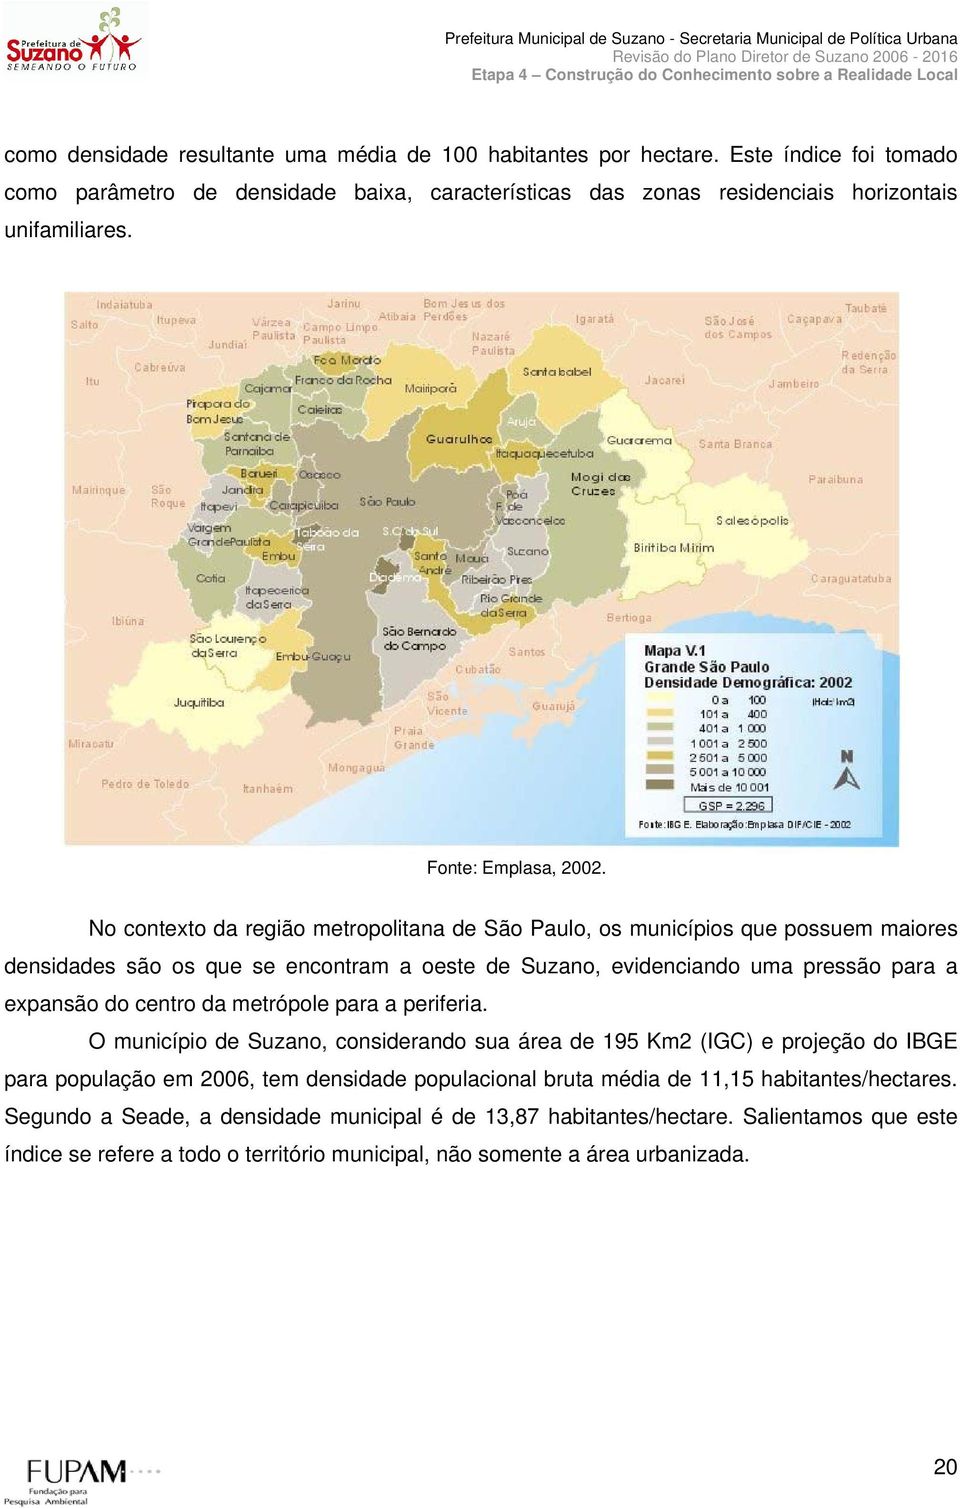 No contexto da região metropolitana de São Paulo, os municípios que possuem maiores densidades são os que se encontram a oeste de Suzano, evidenciando uma pressão para a expansão do centro da